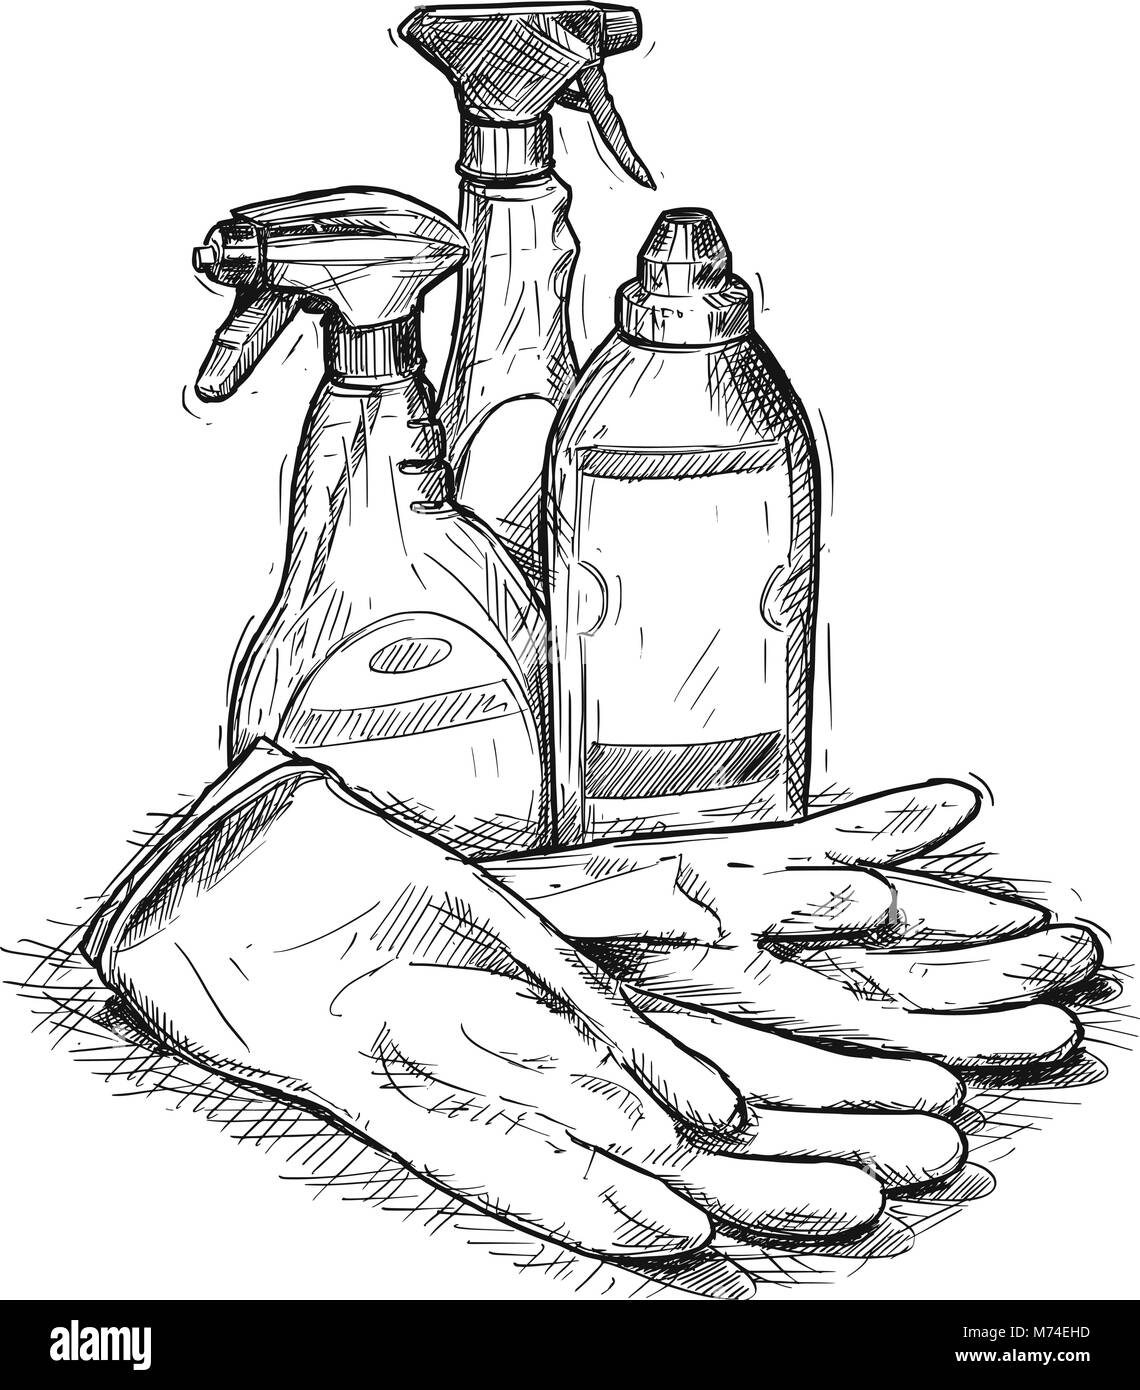 Dibujo a mano alzada, vector del conjunto de productos de limpieza de la casa Ilustración del Vector